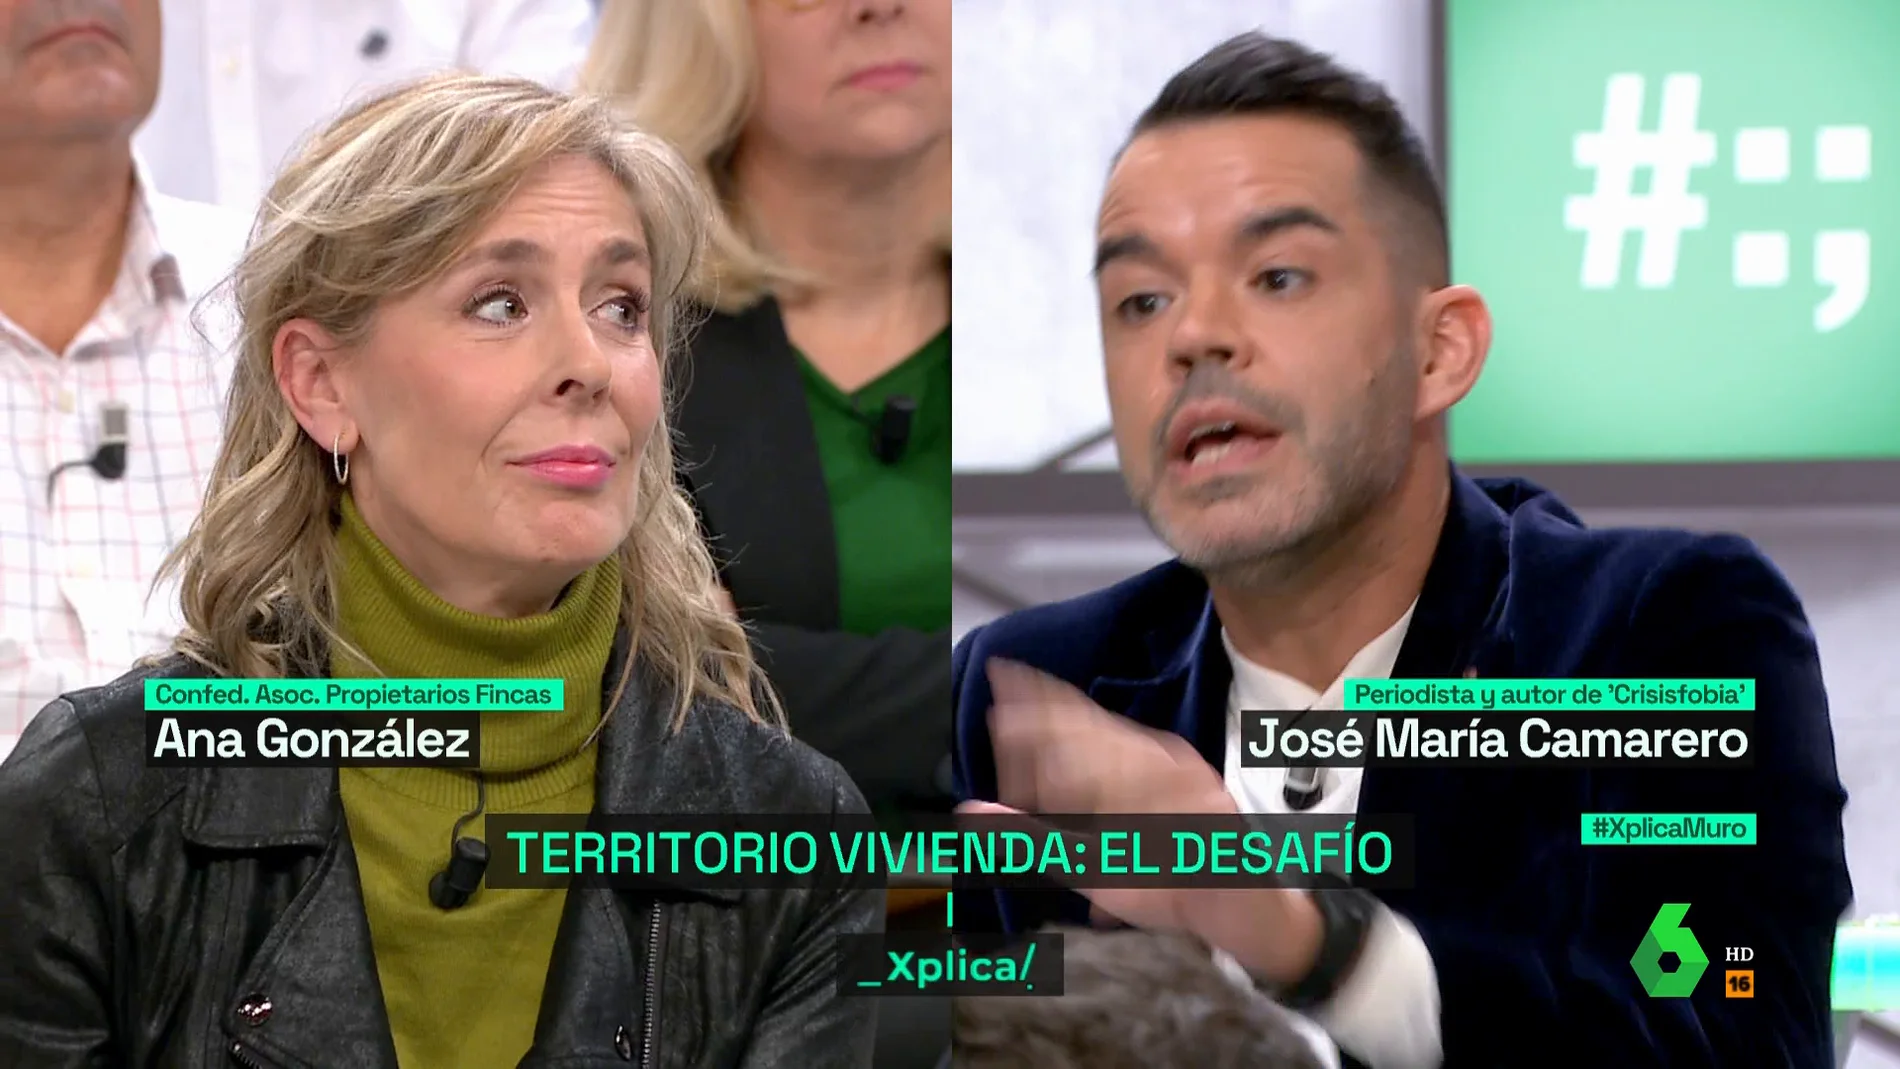 La confrontación de Camarero con Ana González, de la asociación de propietarios de fincas